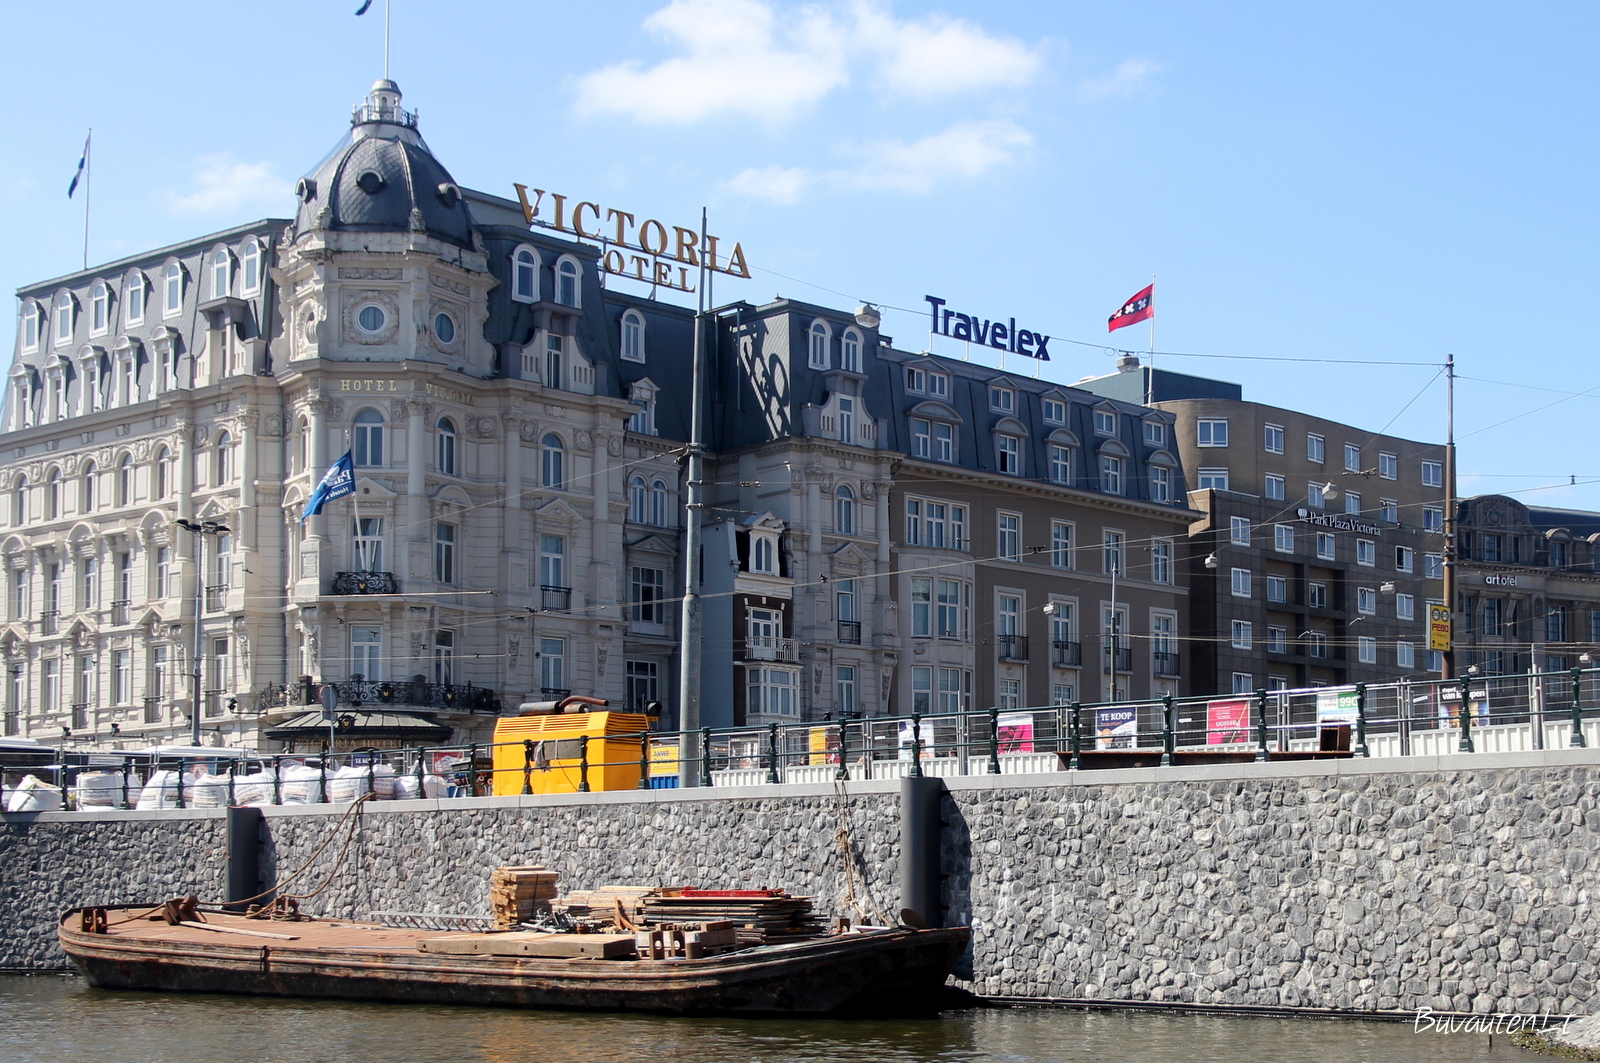 Šis viešbutis žymus tuo, kad jis pastatas aplink tipišką Amsterdamo namą, kurio šeimininkas atsisakė parduoti jį viešbučiui